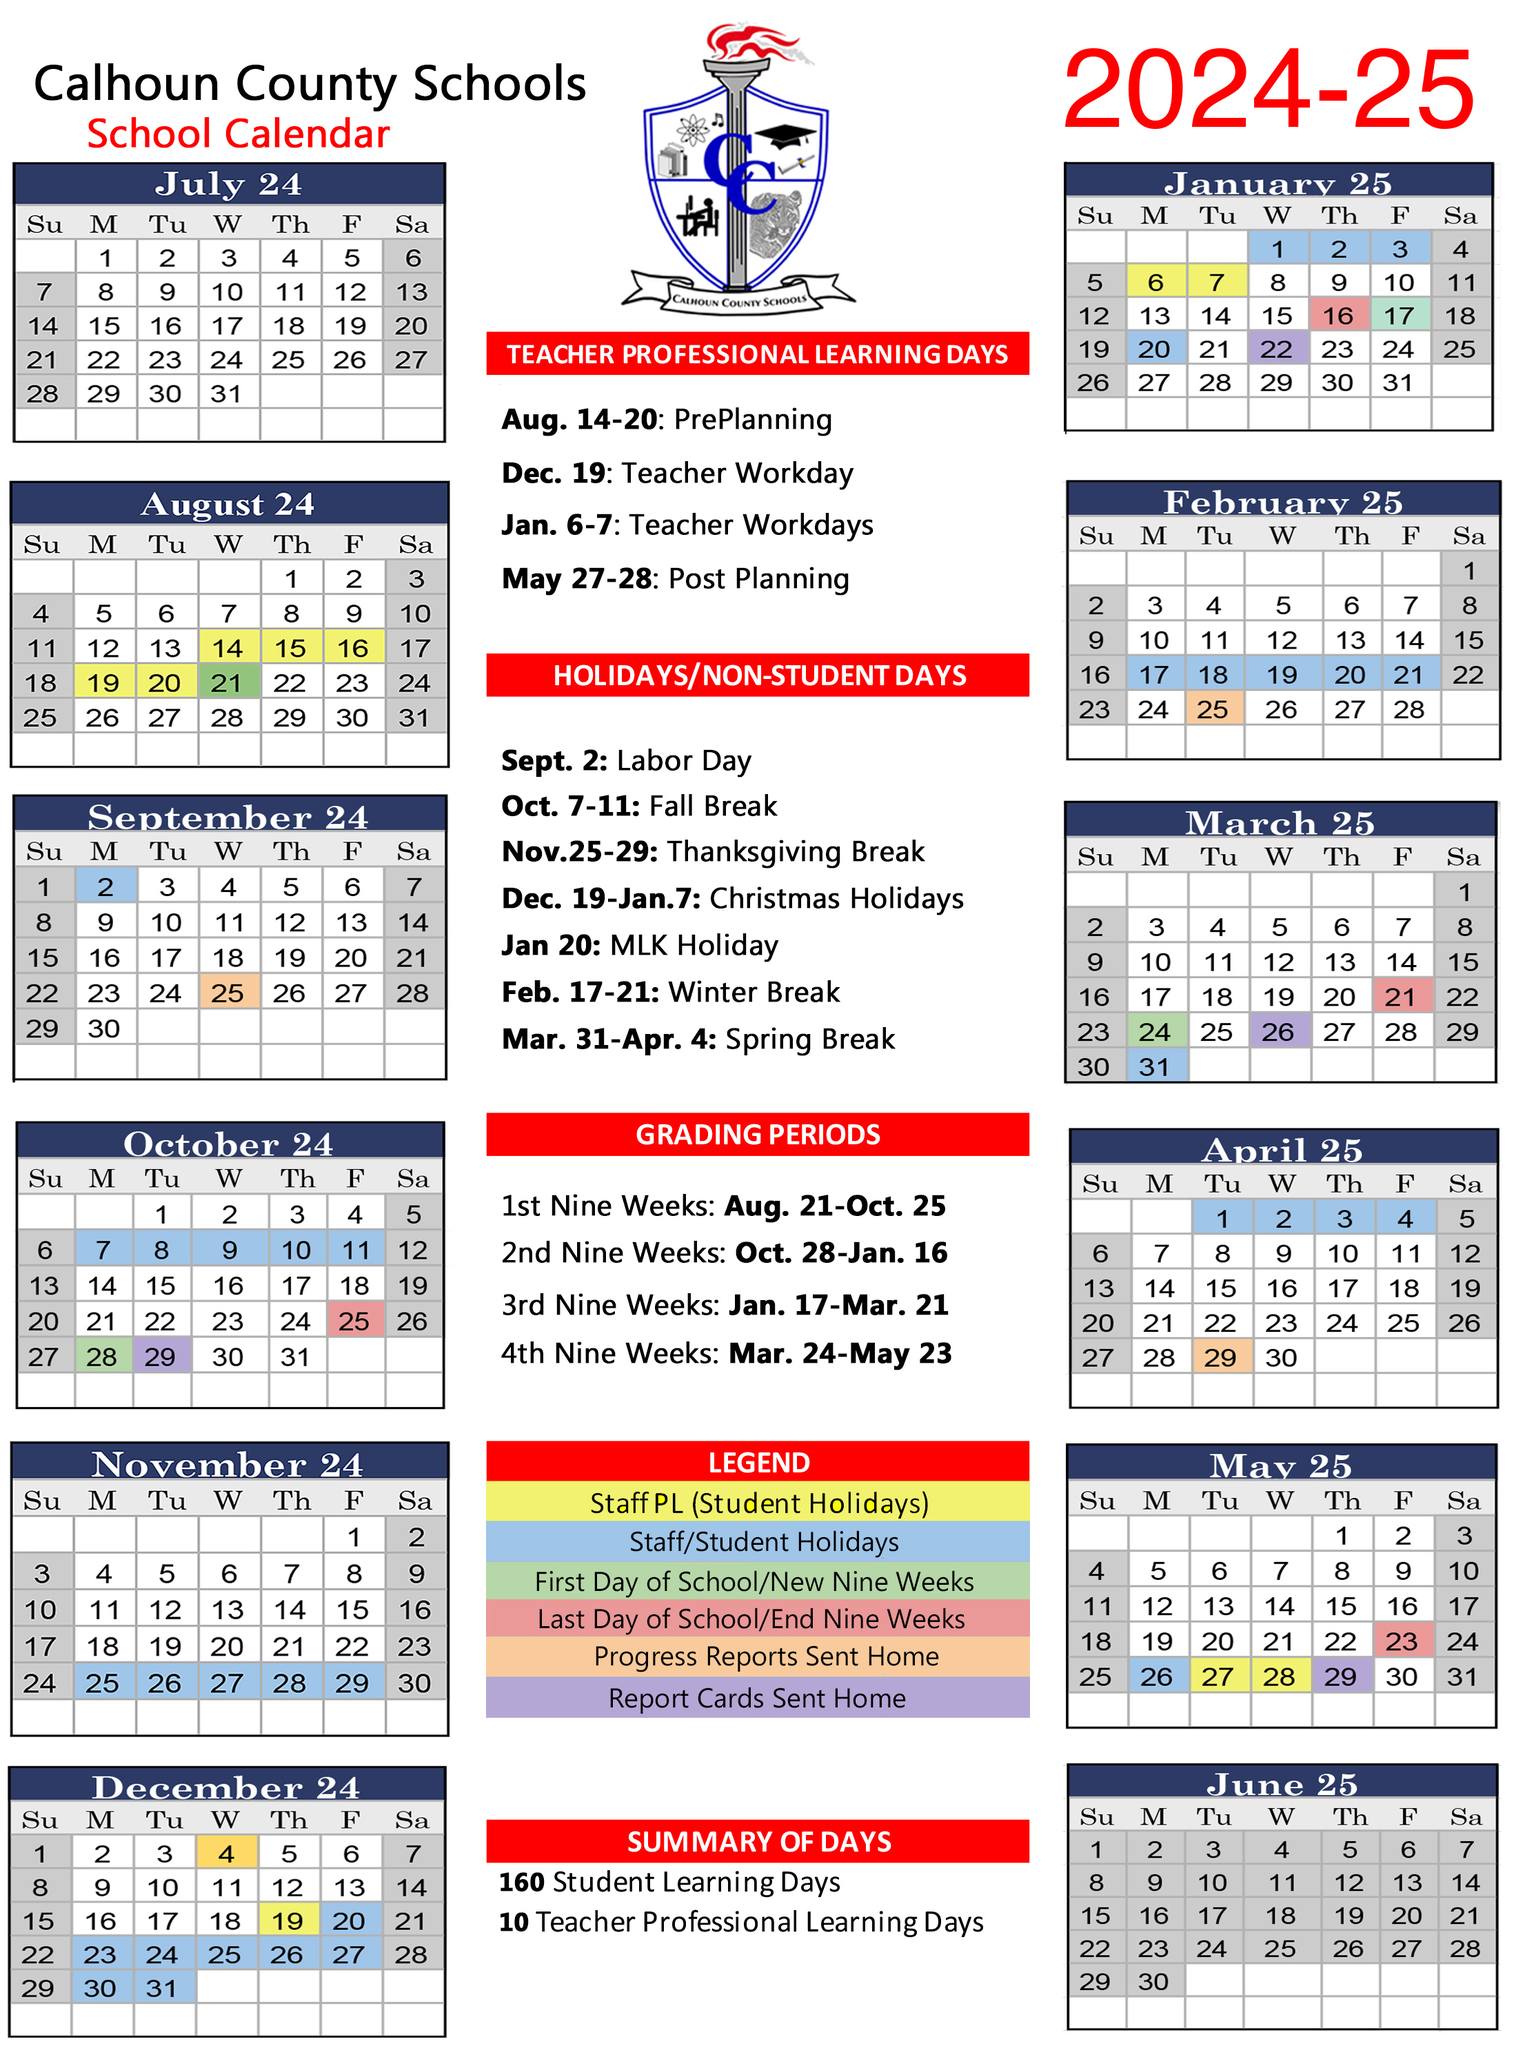 Here is The Calhoun County School Calendar for 2024-2025